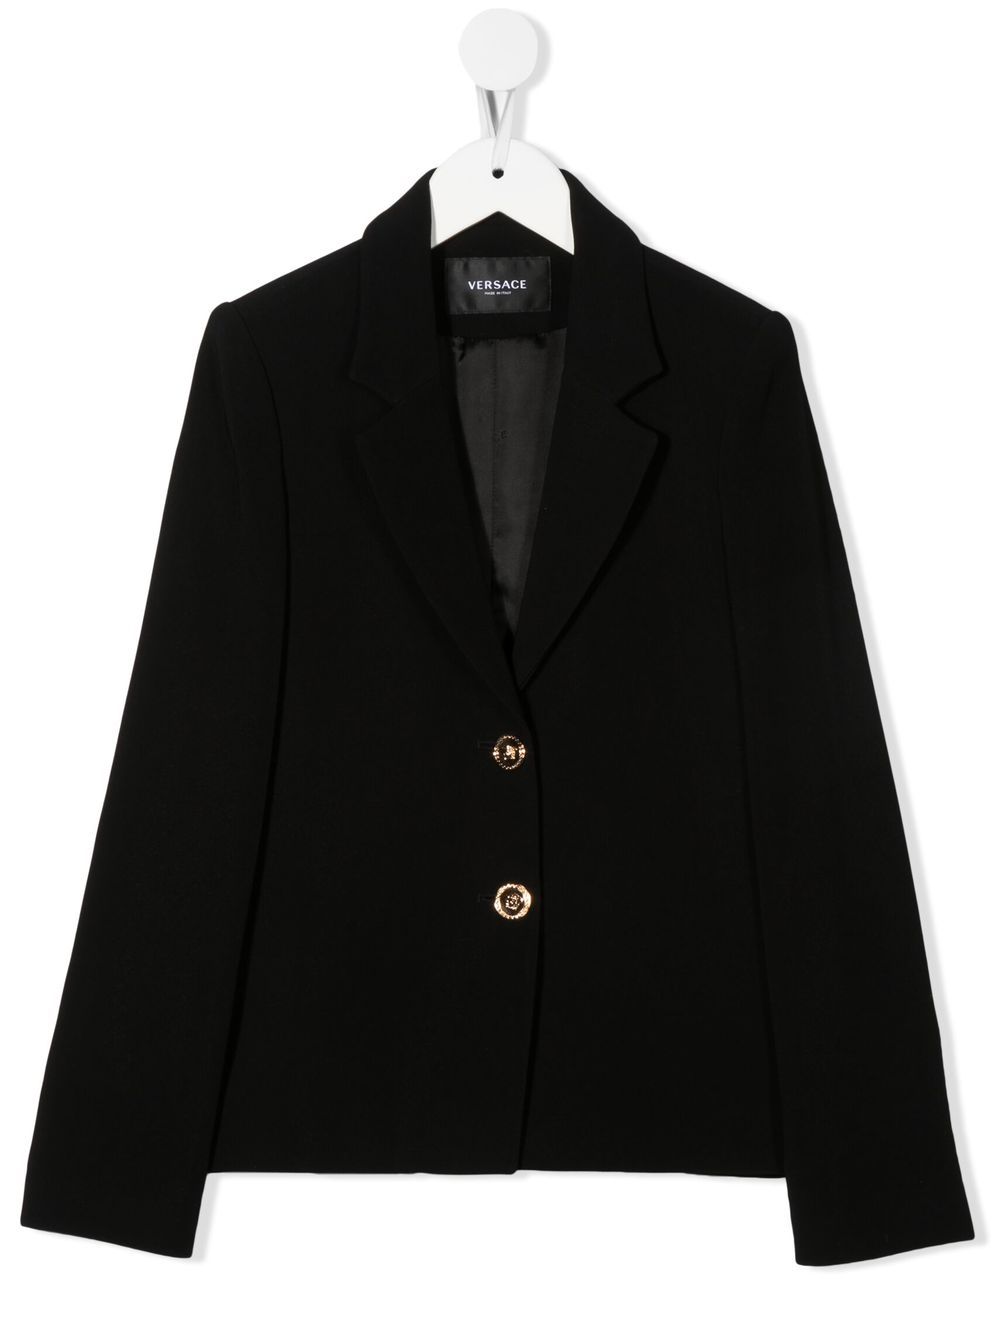 Black blazer for girls